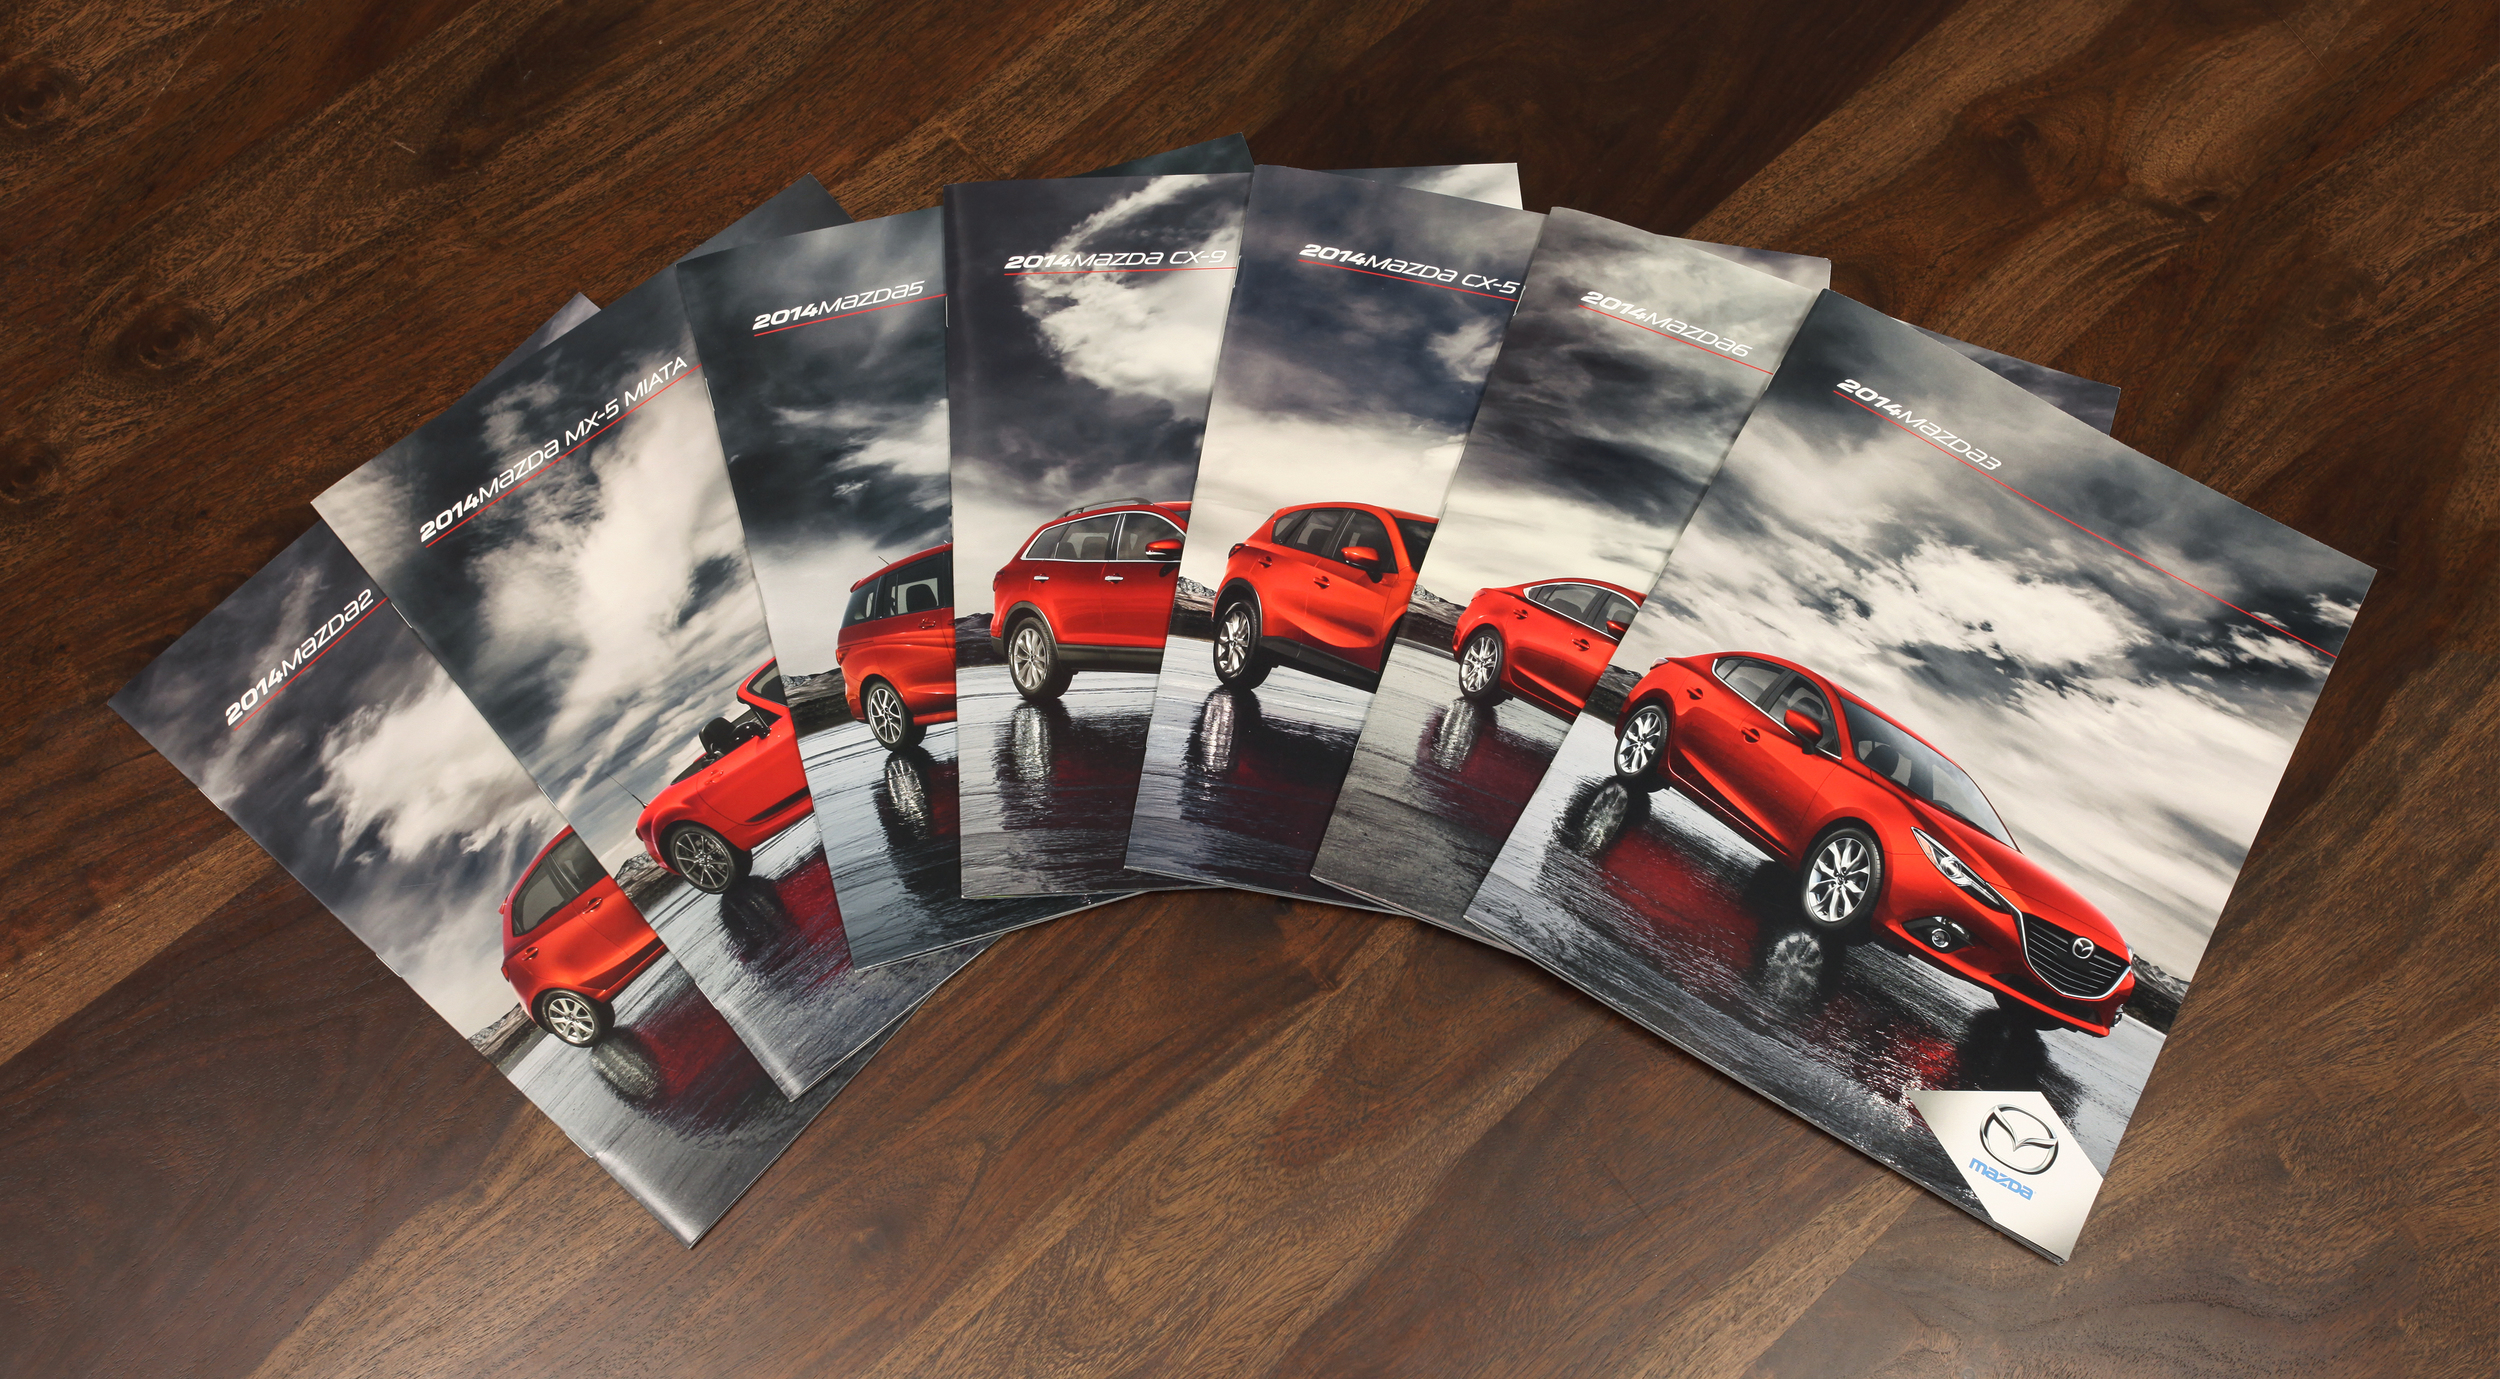 2014_Mazda_Brochures.jpg